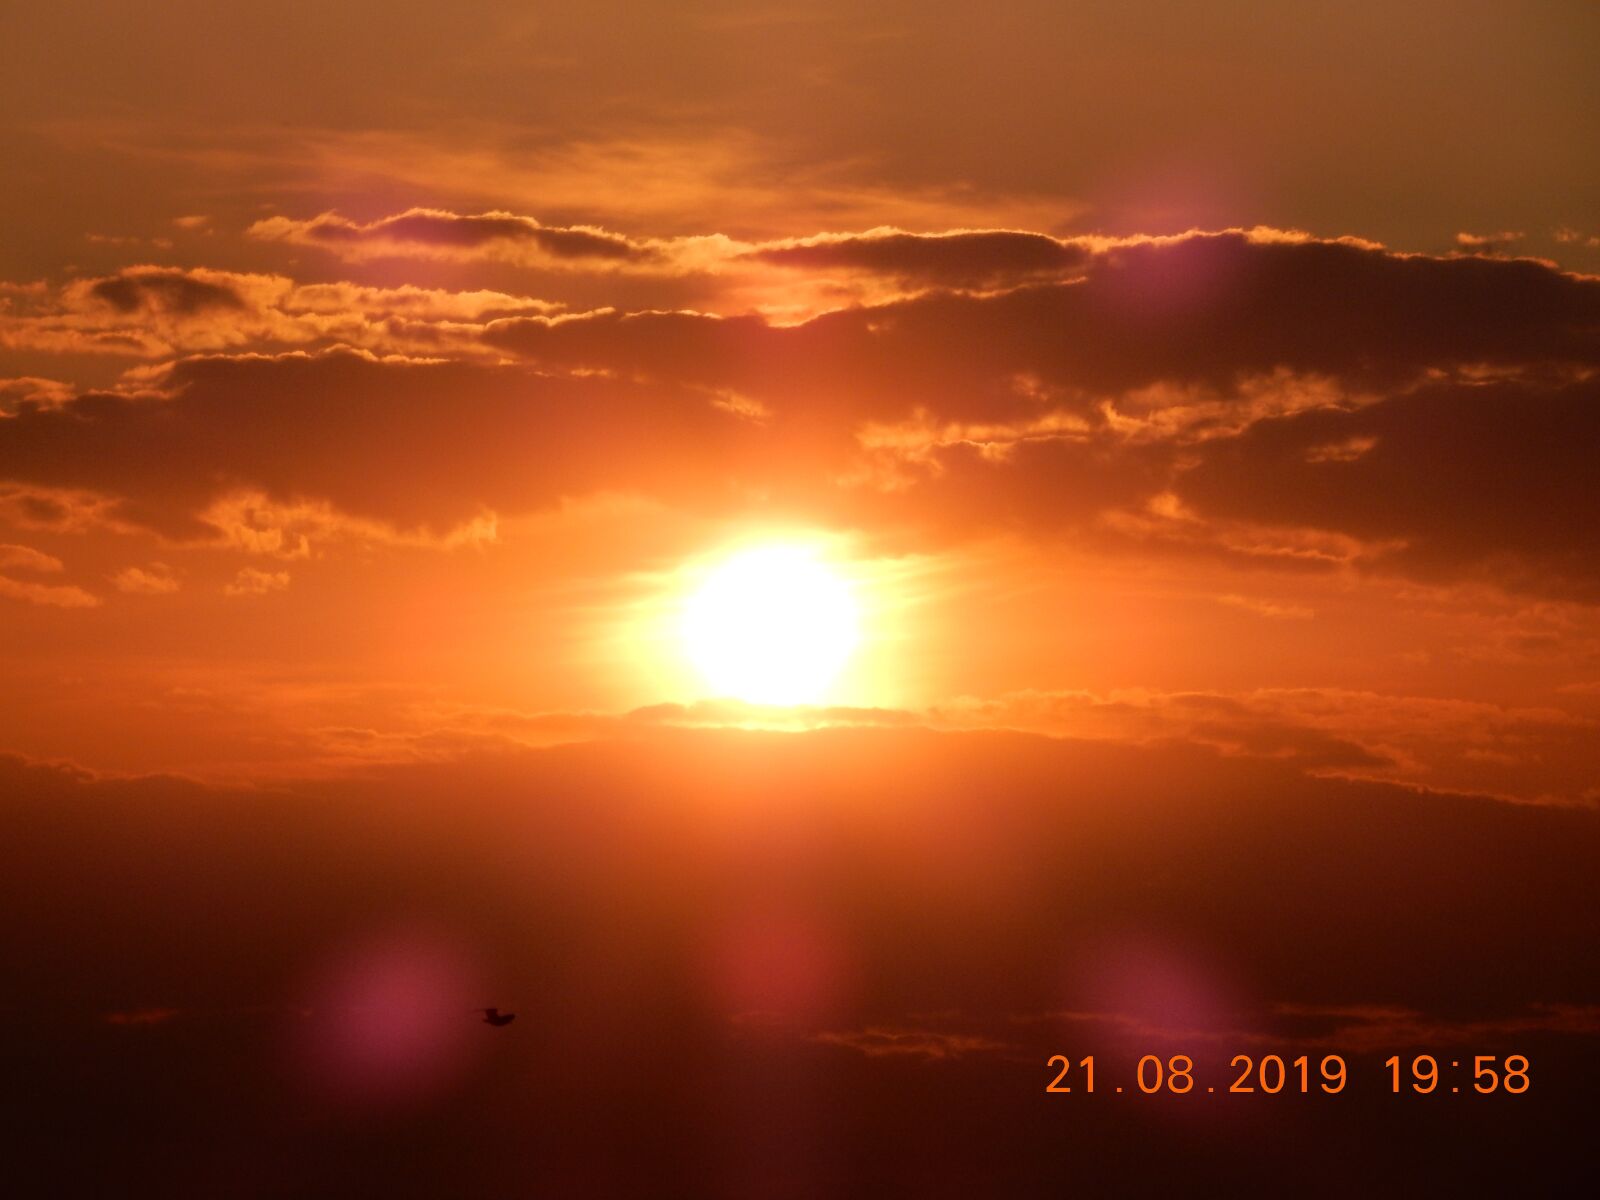 Nikon Coolpix S9900 sample photo. Sunset, evening sun, mood photography